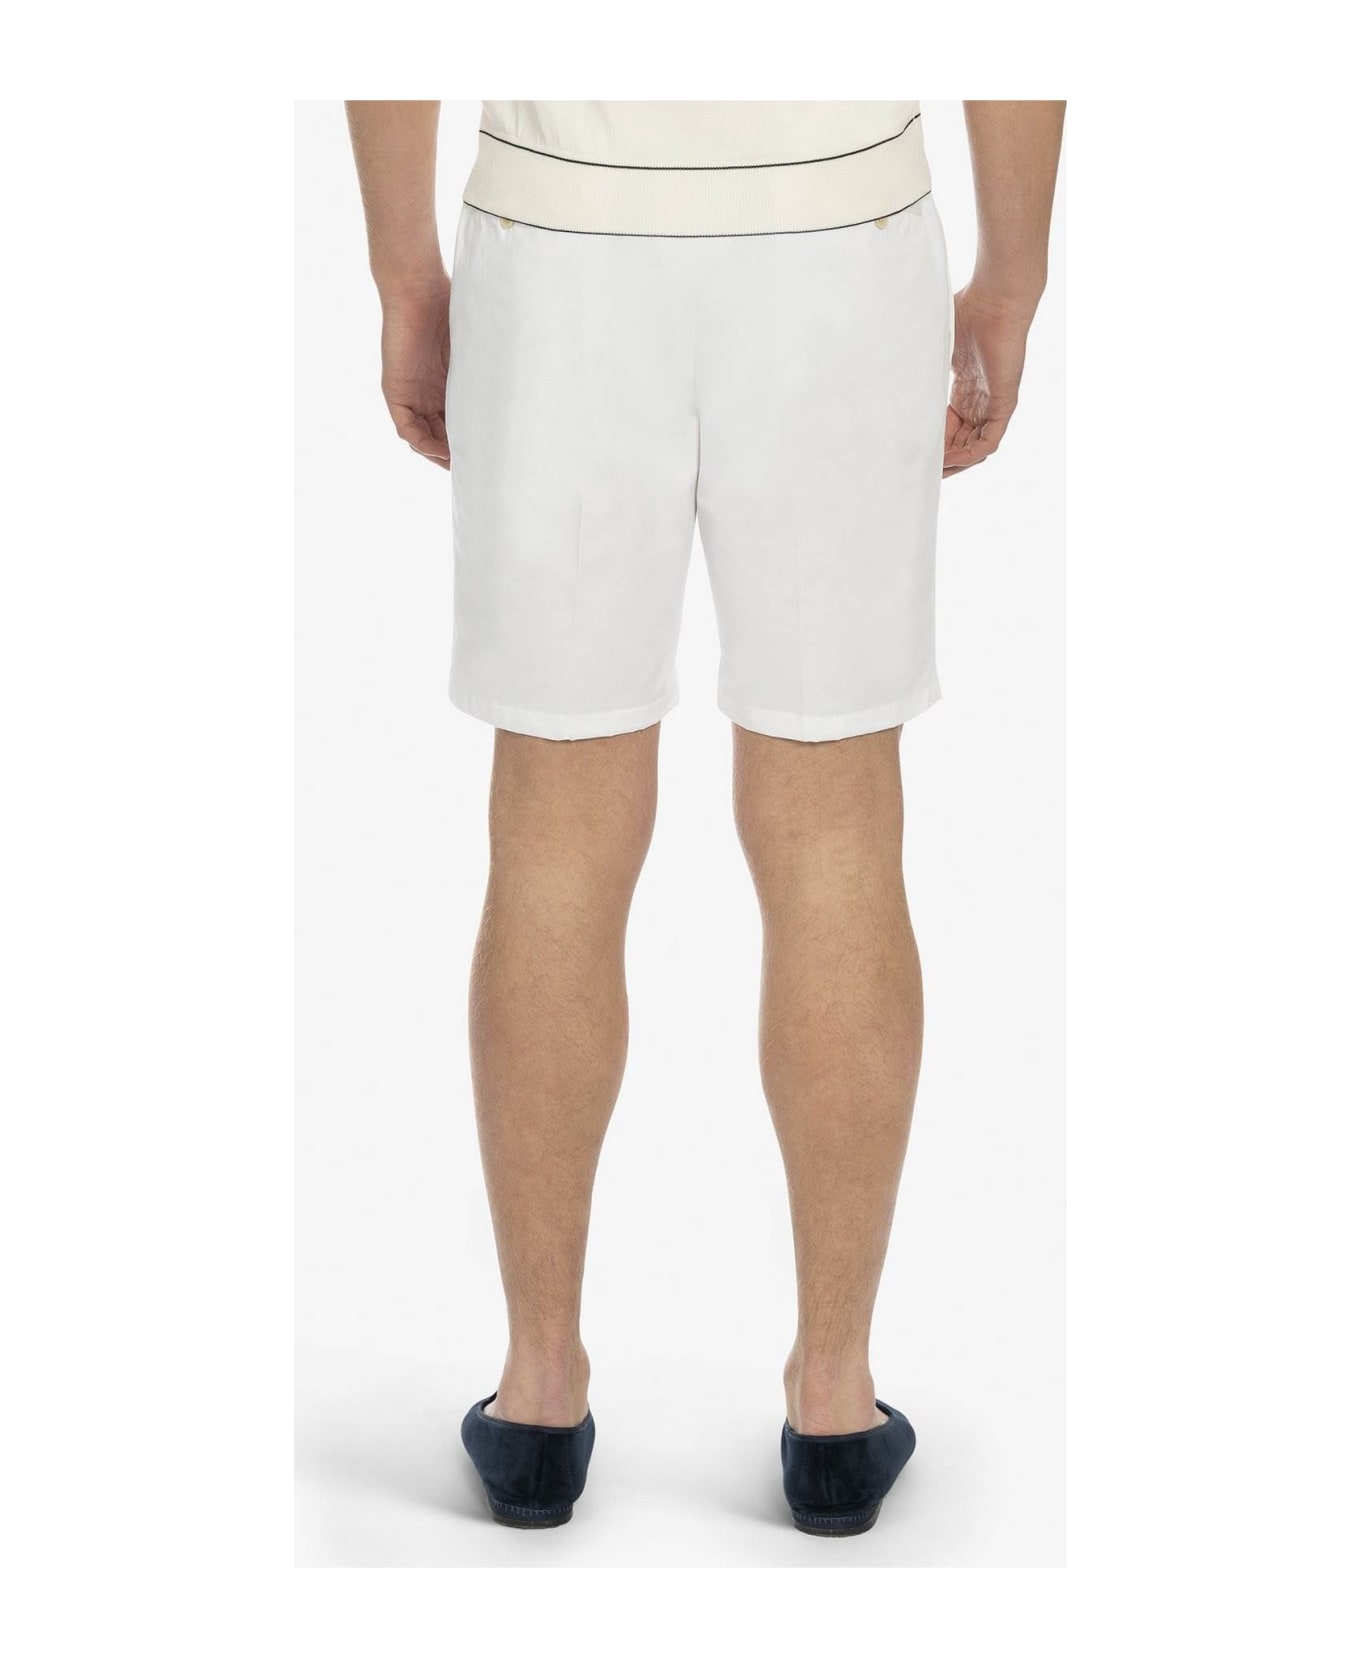 Larusmiani Bermuda Short 'poltu Quatu' Shorts - White ショートパンツ